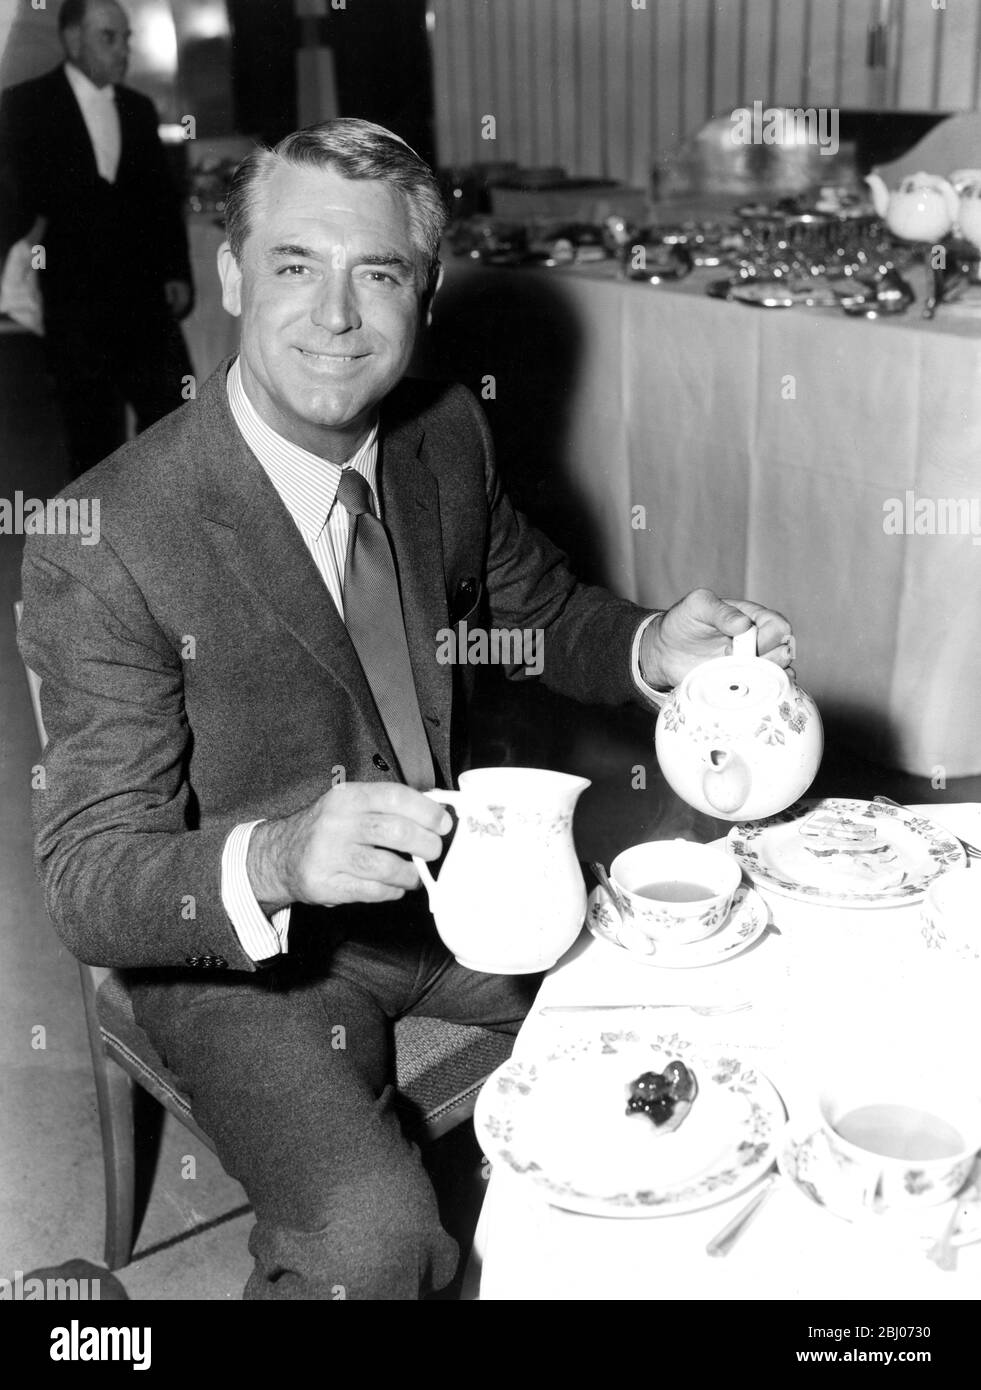 Der amerikanische Filmschauspieler Cary Grant gießt sich heute Nachmittag eine Tasse Tee im Savoy Hotel, als er einen Presseempfang hielt. Cary Grant flog am Freitagabend nach London, um den Premier seines neuesten Films "North by Northwest" im Empire Theatre, Leicester Square, zu besuchen. Er ist Mitstar mit Eva marie Saint und James Mason. - 11. Oktober 1959 Stockfoto